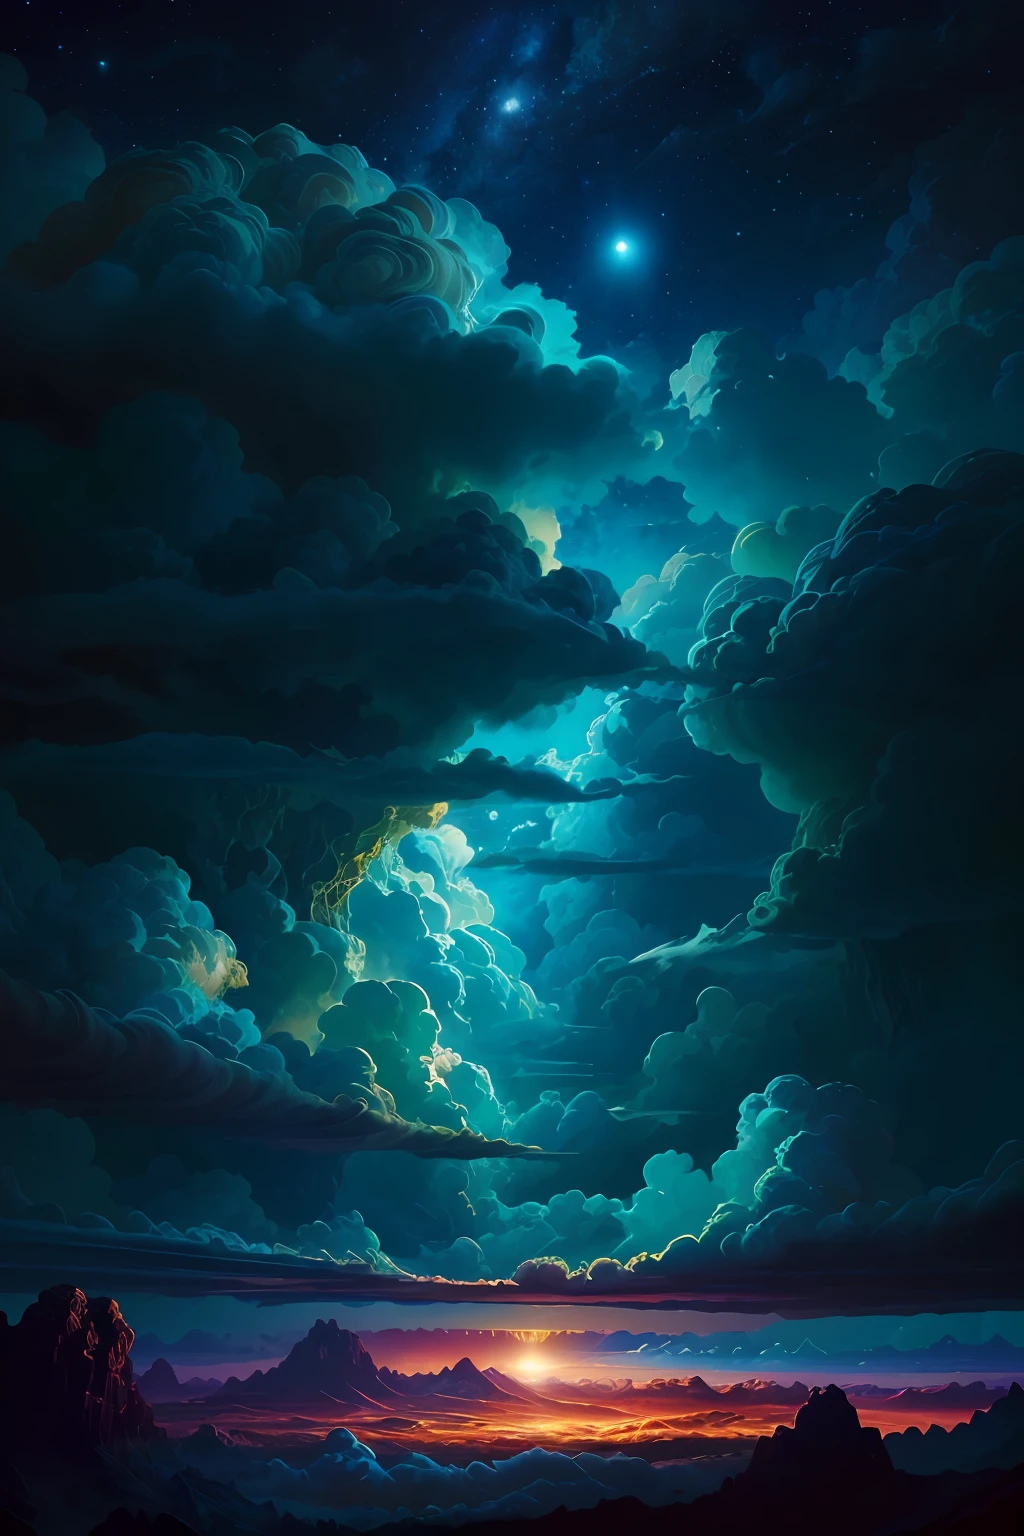 Illustration der Jupiterwolken von Dan Mumford, fremde Landschaft und Vegetation, epische Szene, viele wirbelnde Wolken, hohe Belichtung, sehr detailliert, Realistisch, lebendige blau getönte Farben, uhd